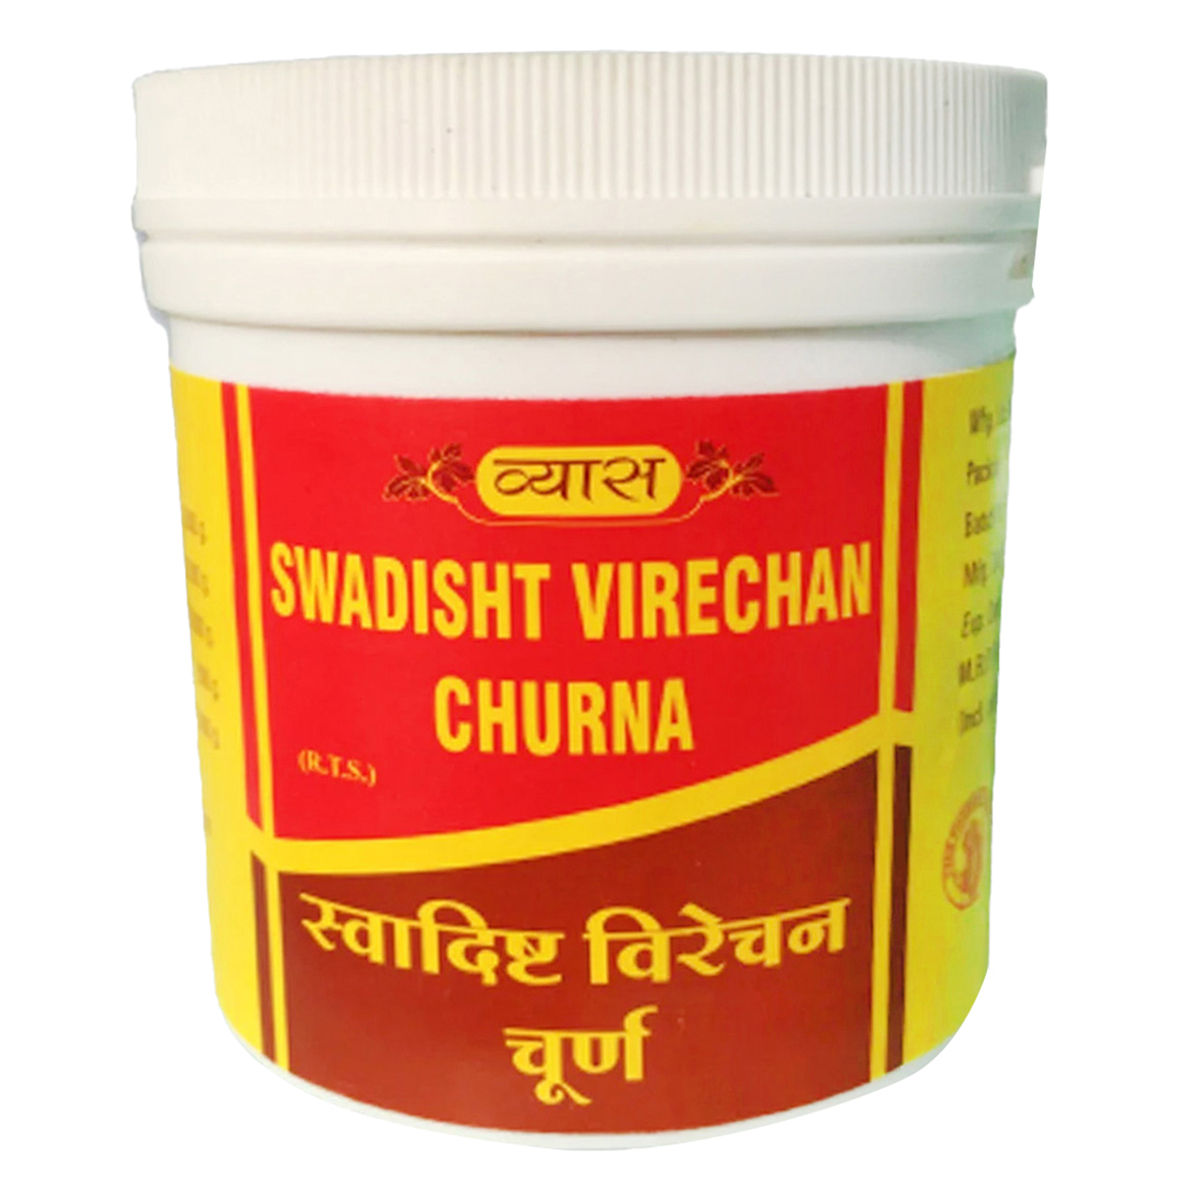 Buy Vyas Swadishta Virechan Churna, 100 gm Online